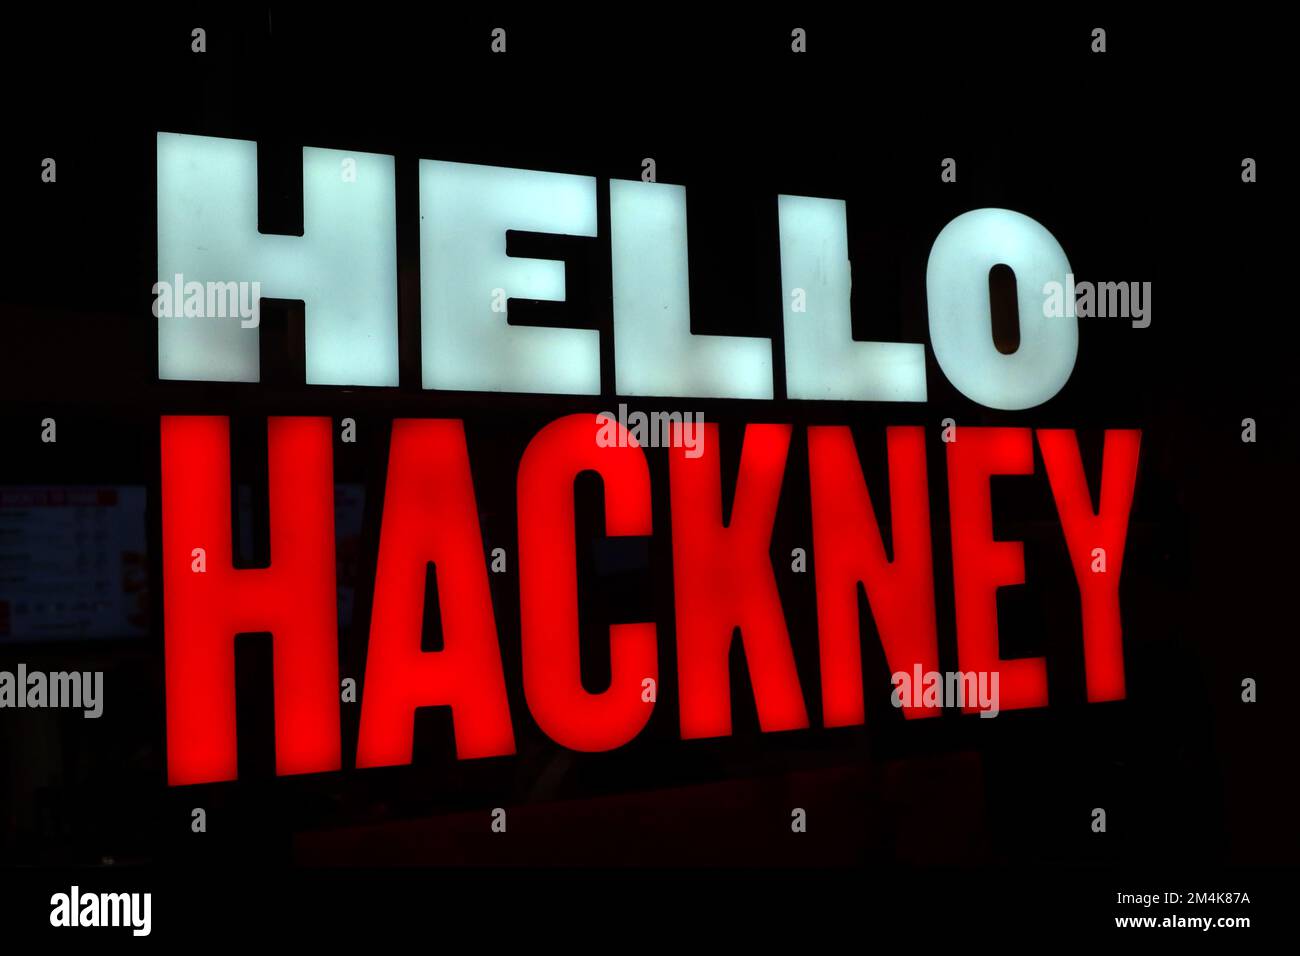 Hello hackney, KFC sign from 311 Mare St, London, England,UK, E8 1EJ Stock Photo